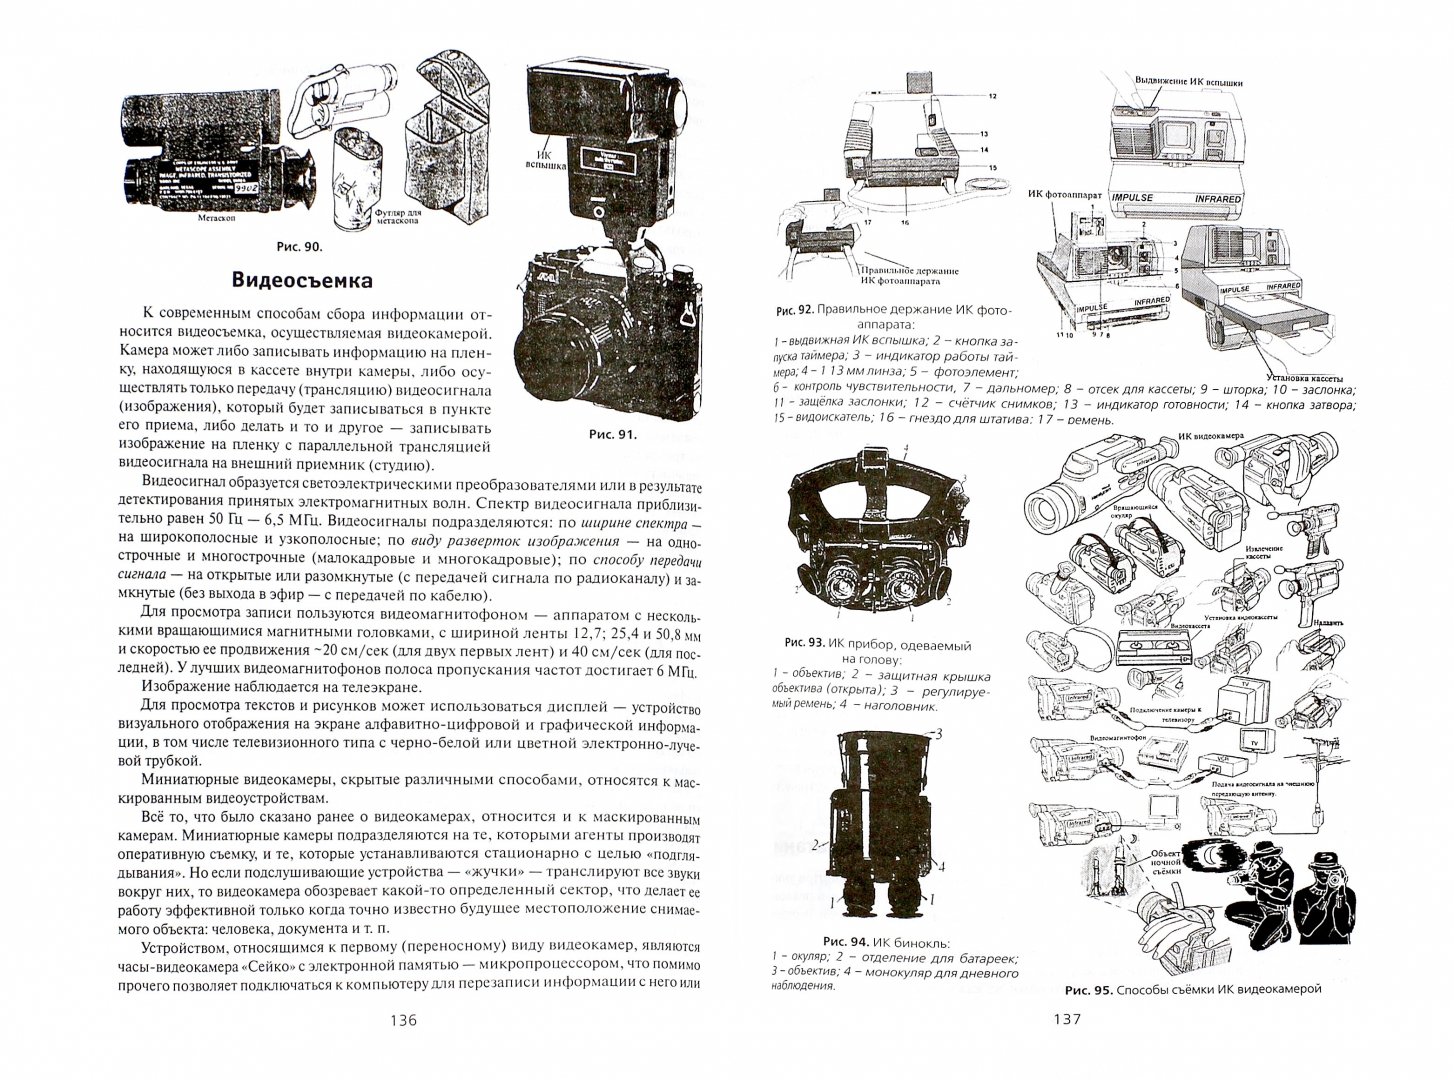 Иллюстрация 2 из 7 для Секретные инструкции ЦРУ и КГБ по сбору фактов - Виктор Попенко | Лабиринт - книги. Источник: Лабиринт